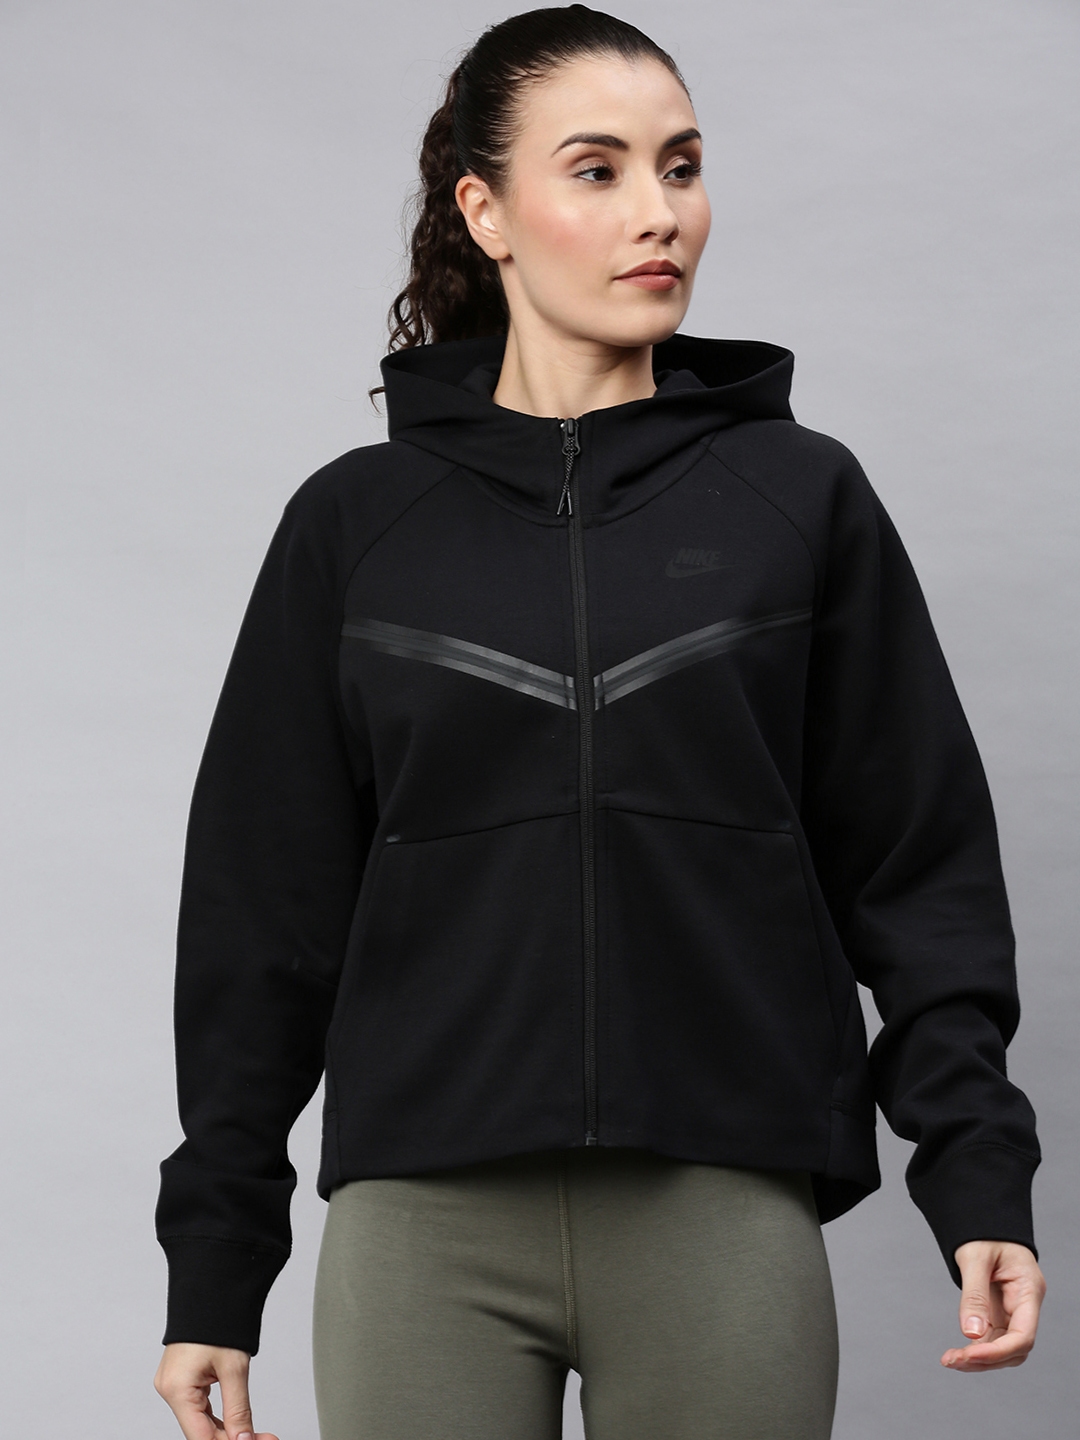 Buy Nike Women Black Solid Sporty Jacket - Jackets for Women 13010708 ...